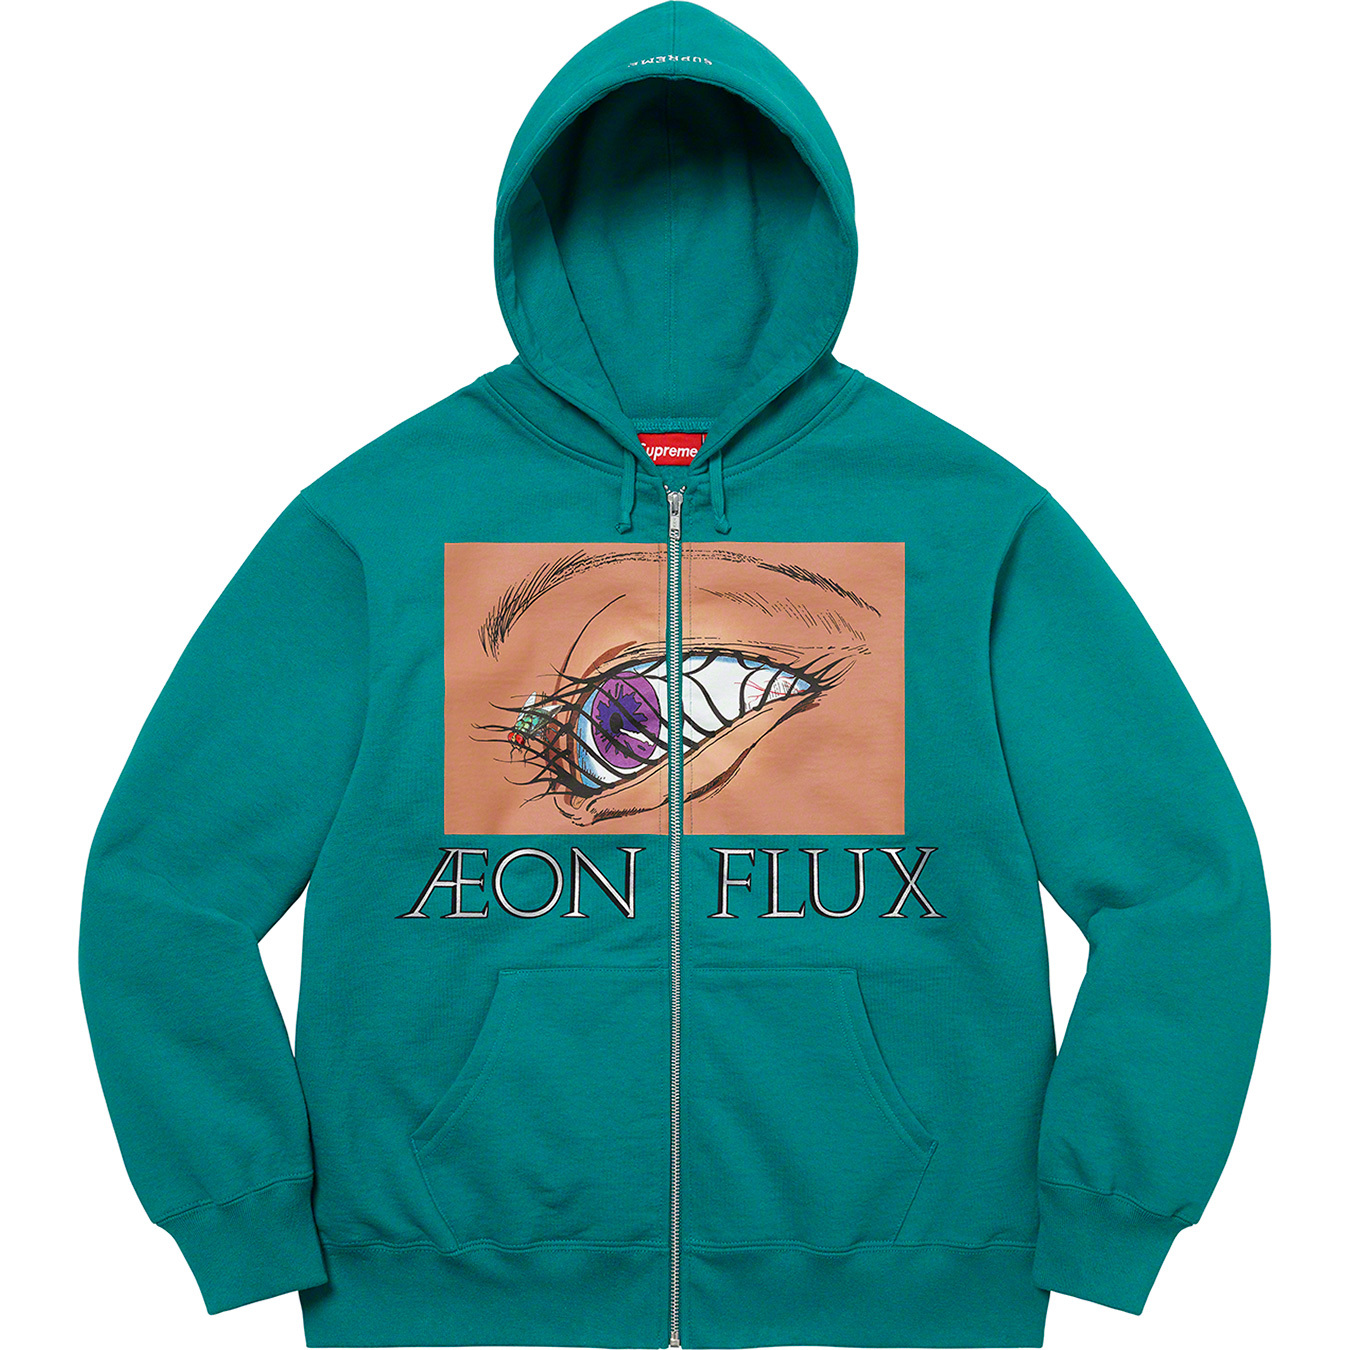 Supreme/Aeon Flux Zip Up Hooded Sweatshirt